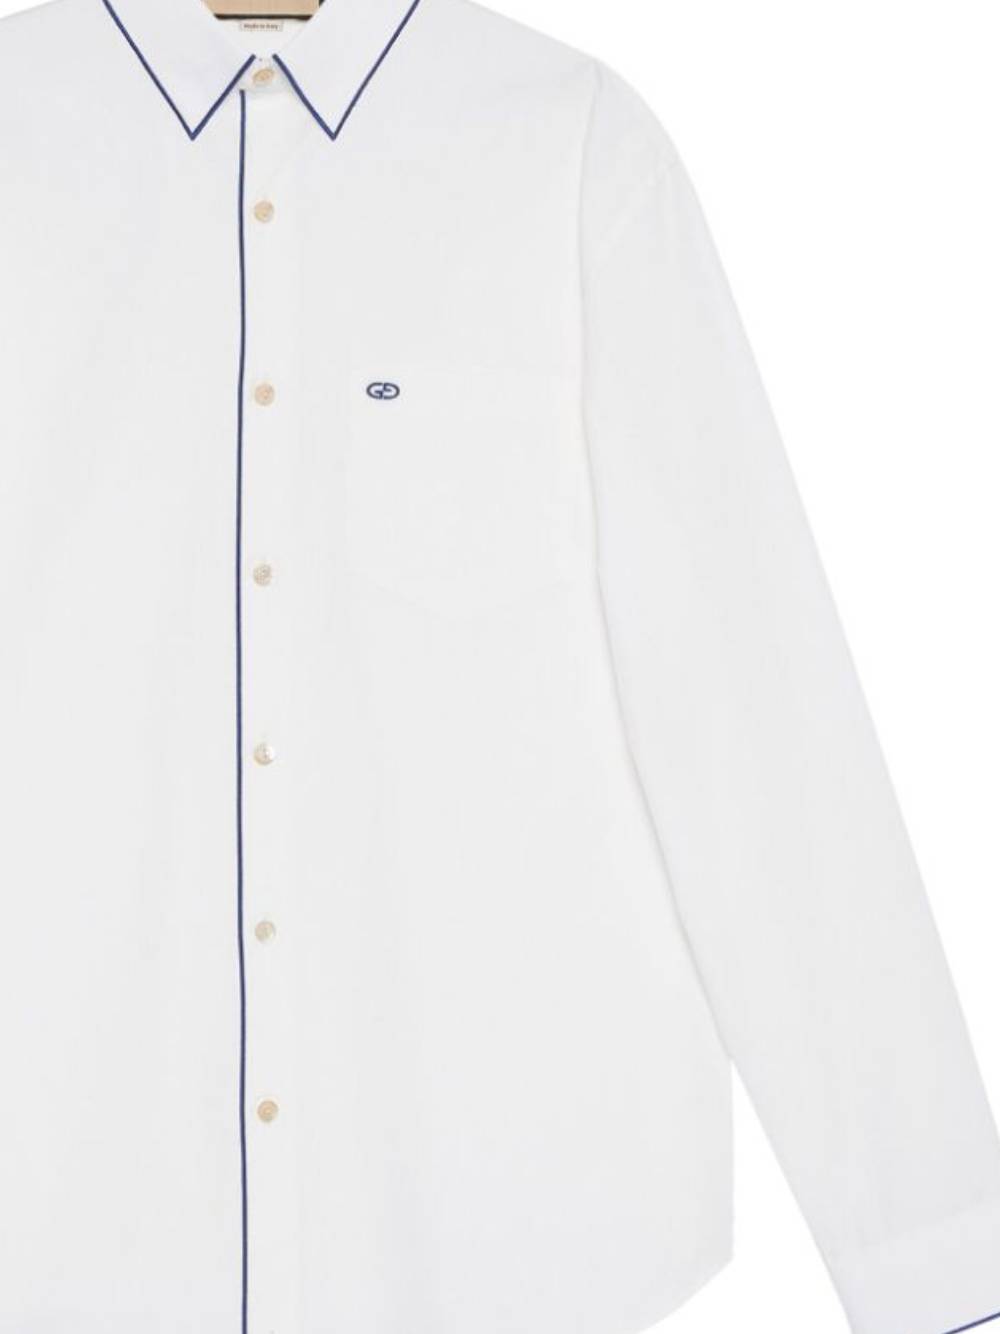 Gucci 762169 Man NATURAL WHITE/MIX Shirts - Zuklat